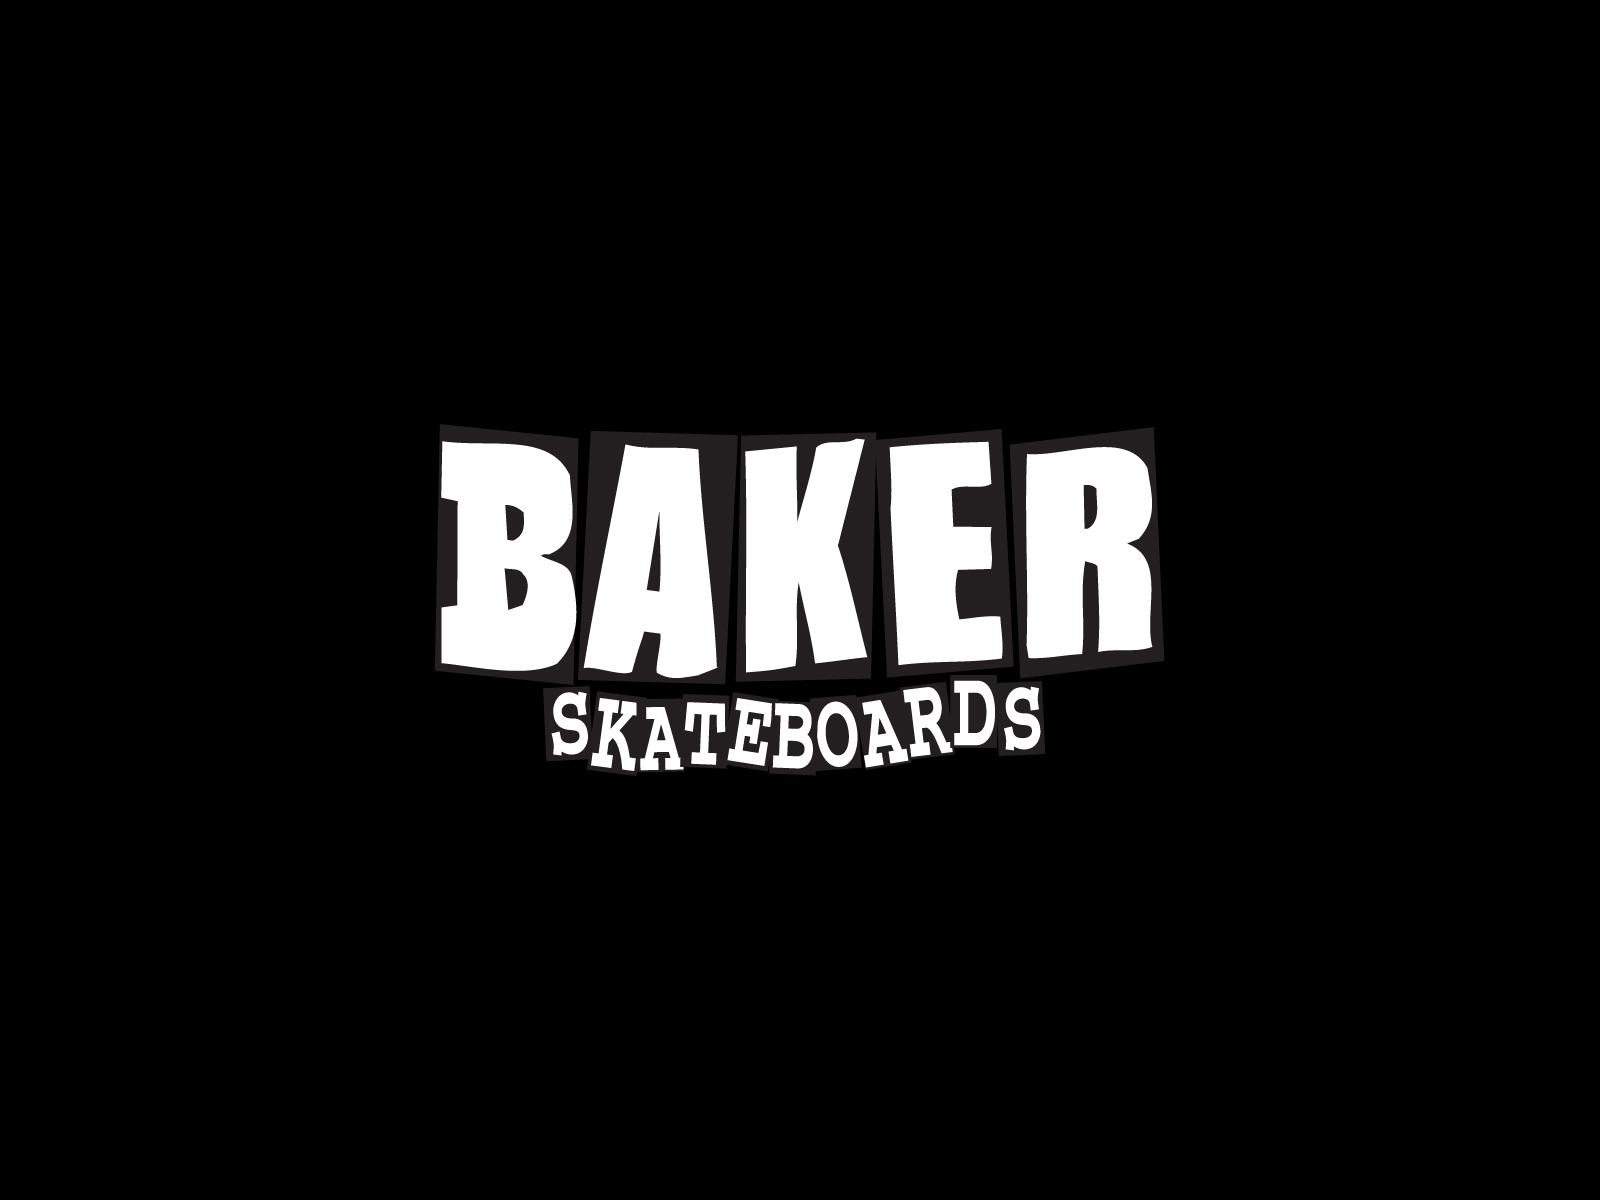 Baker Skateboards Wallpaper. Lirik Baker Wallpaper, Ted Baker Wallpaper and Baker Skateboards Wallpaper